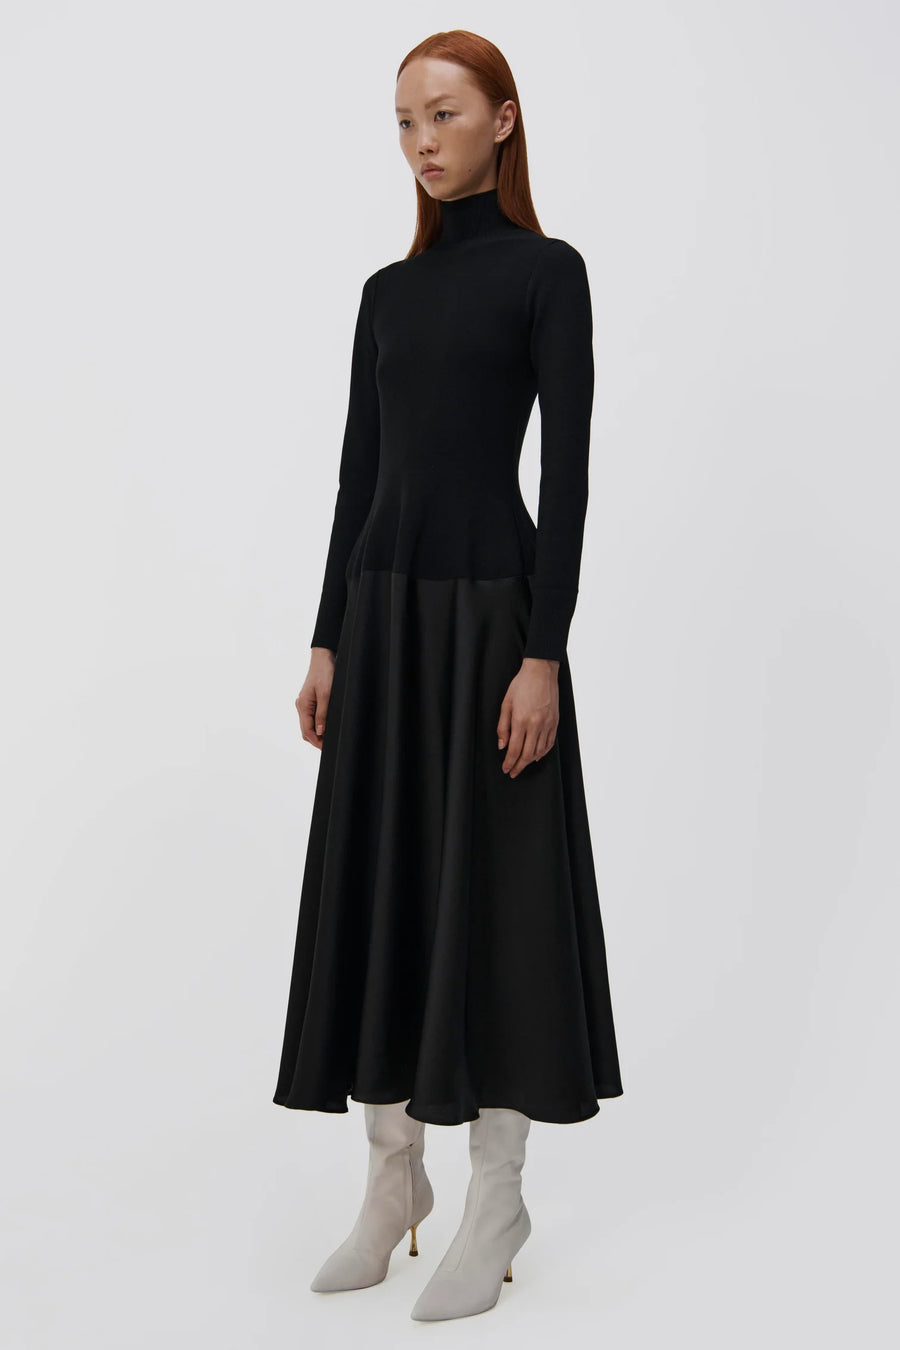 SIMKHAI Frances Satin Combo Midi Dress